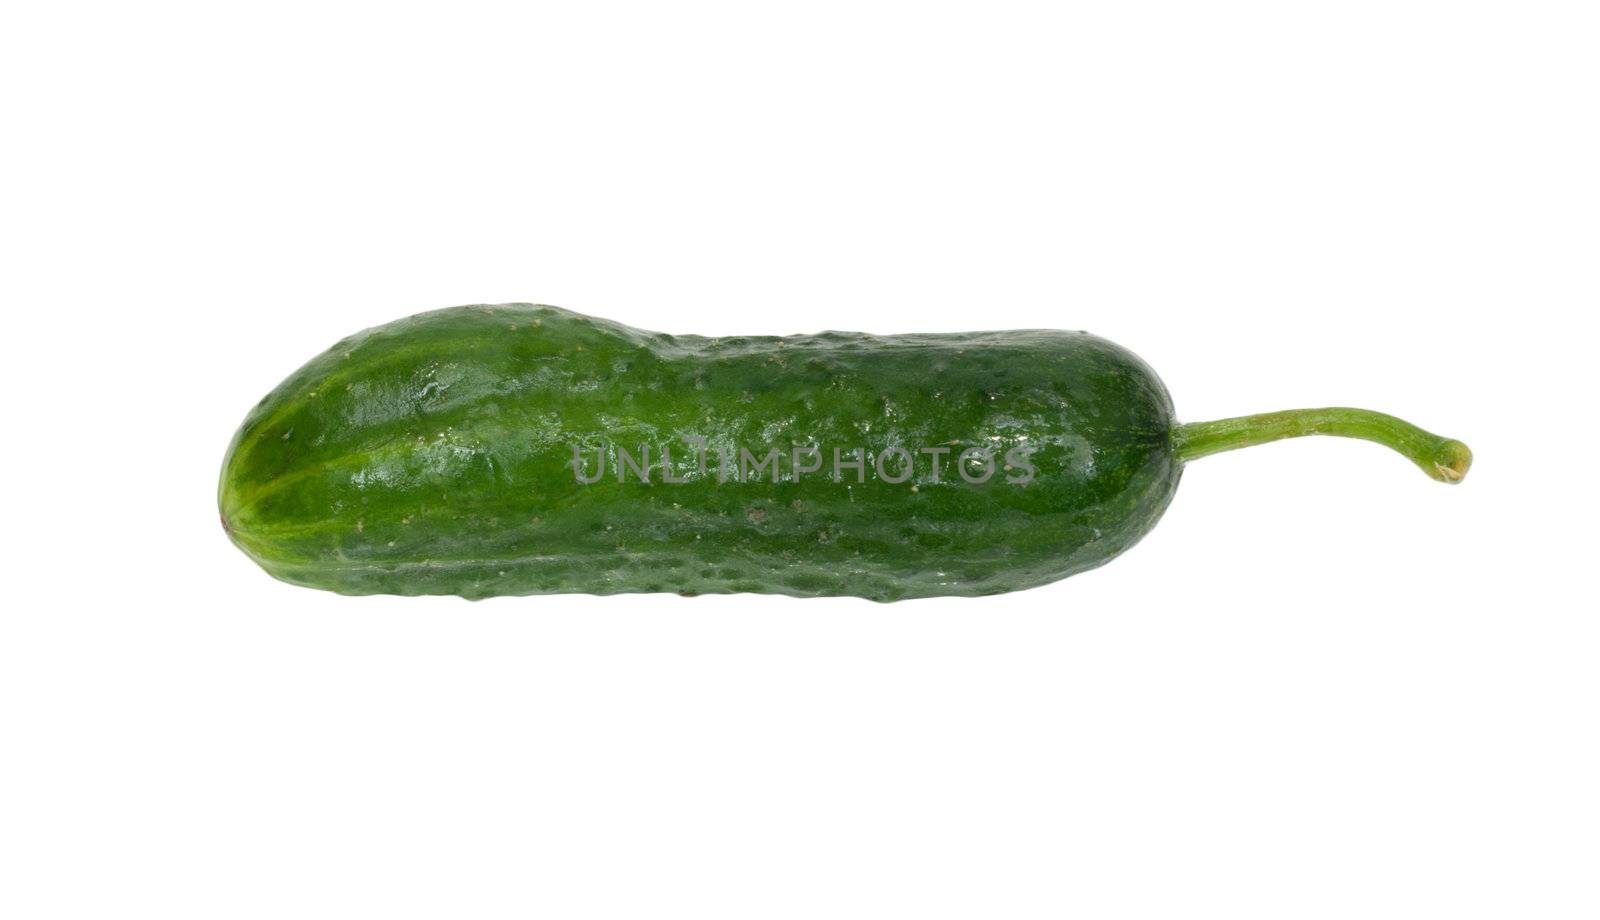 cucumber on white background by schankz